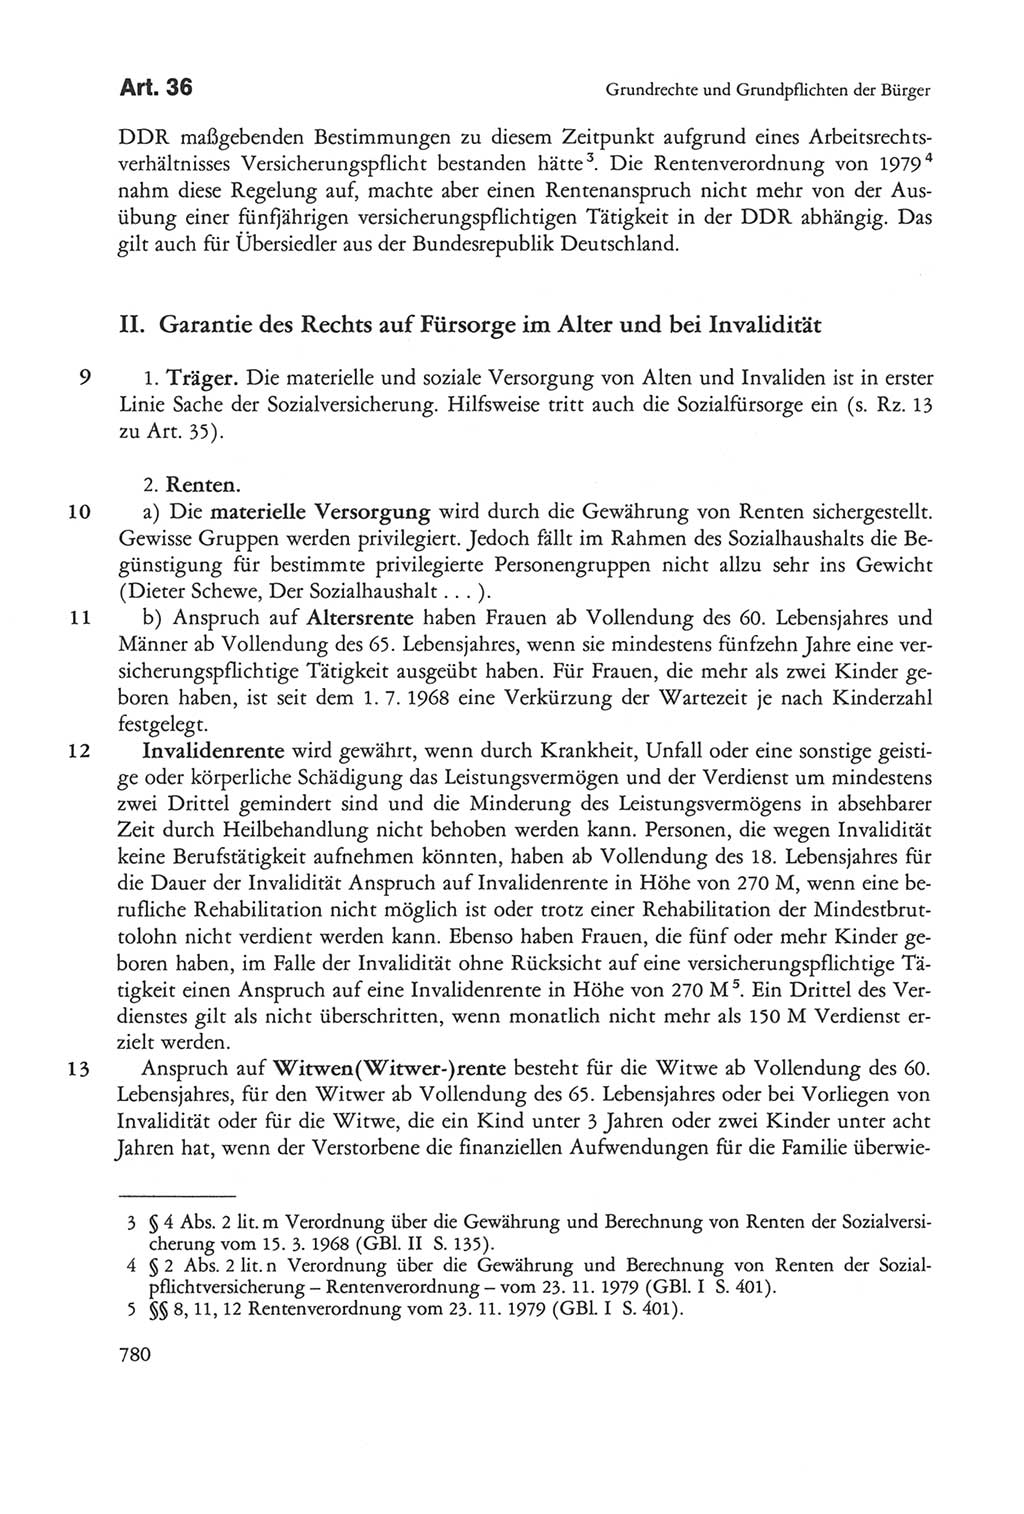 Die sozialistische Verfassung der Deutschen Demokratischen Republik (DDR), Kommentar mit einem Nachtrag 1997, Seite 780 (Soz. Verf. DDR Komm. Nachtr. 1997, S. 780)